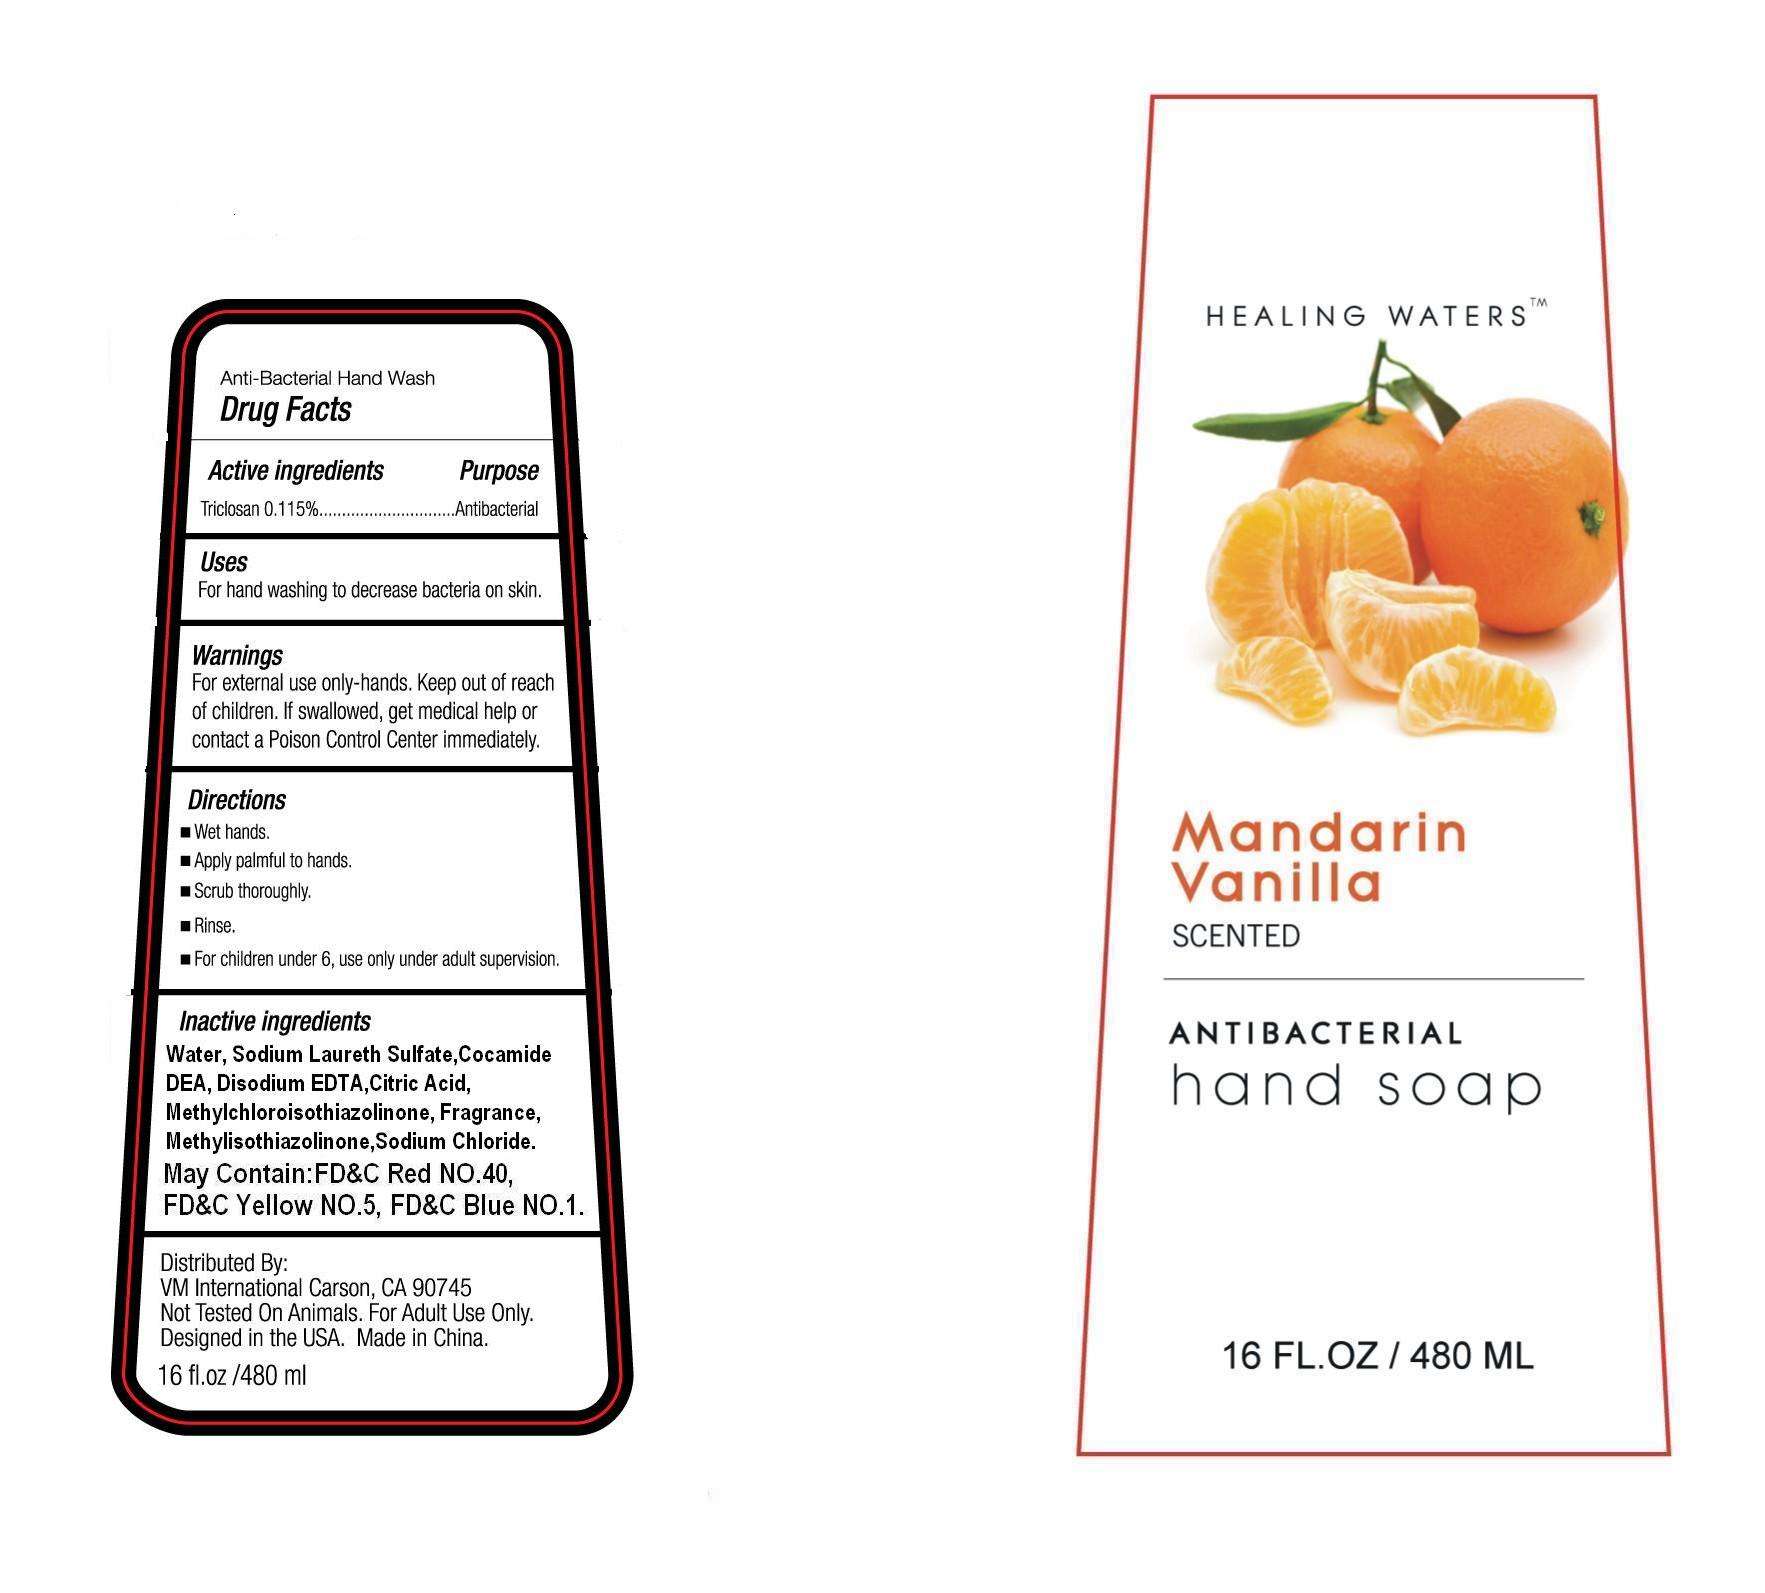 Healing Waters Mandarin Vanilla Antibacterial Hand Soap